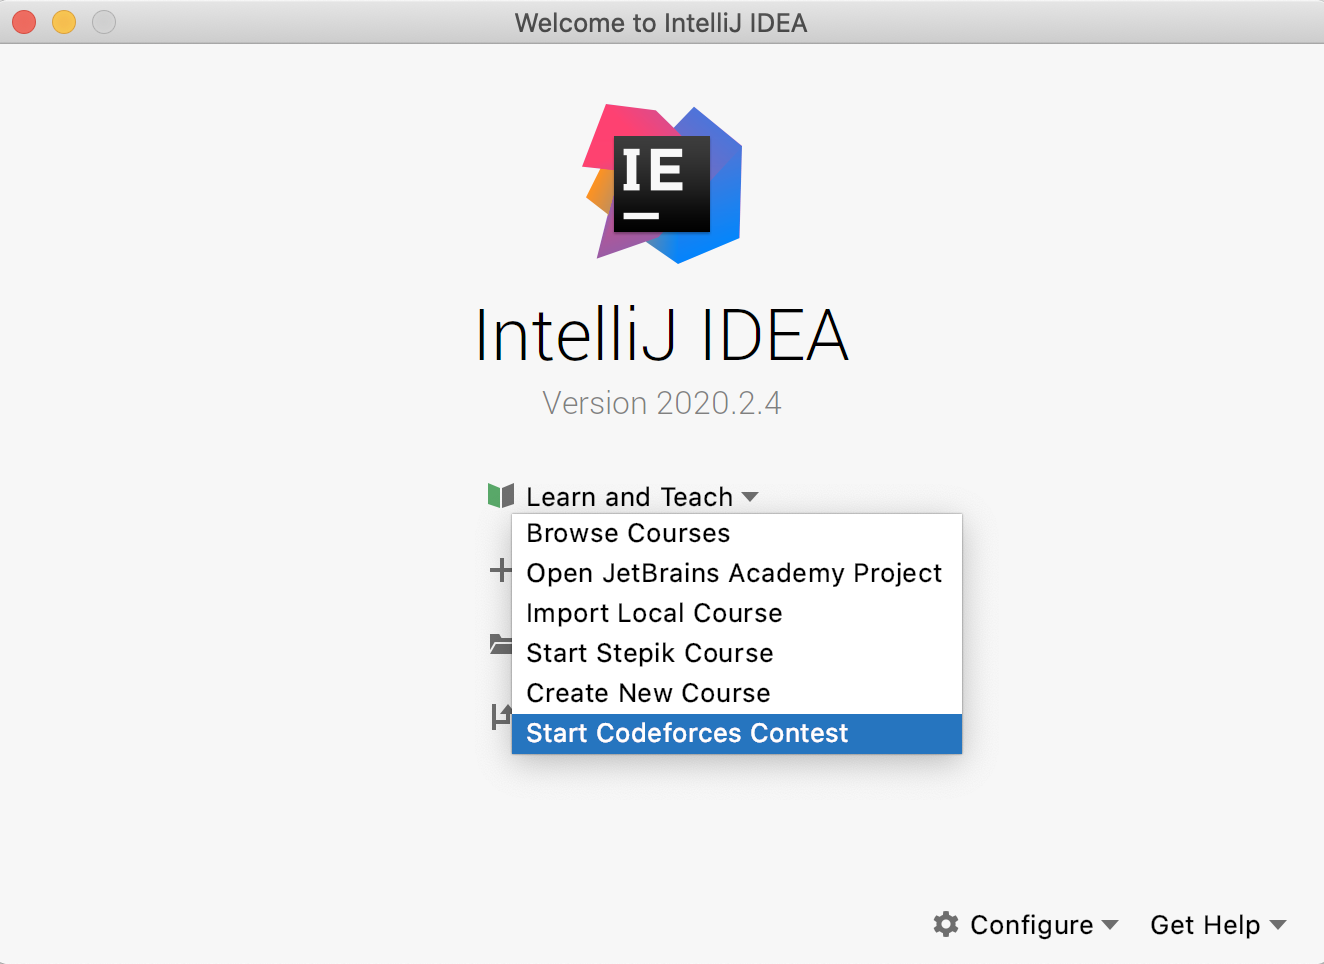 edu start codeforces contest idea png